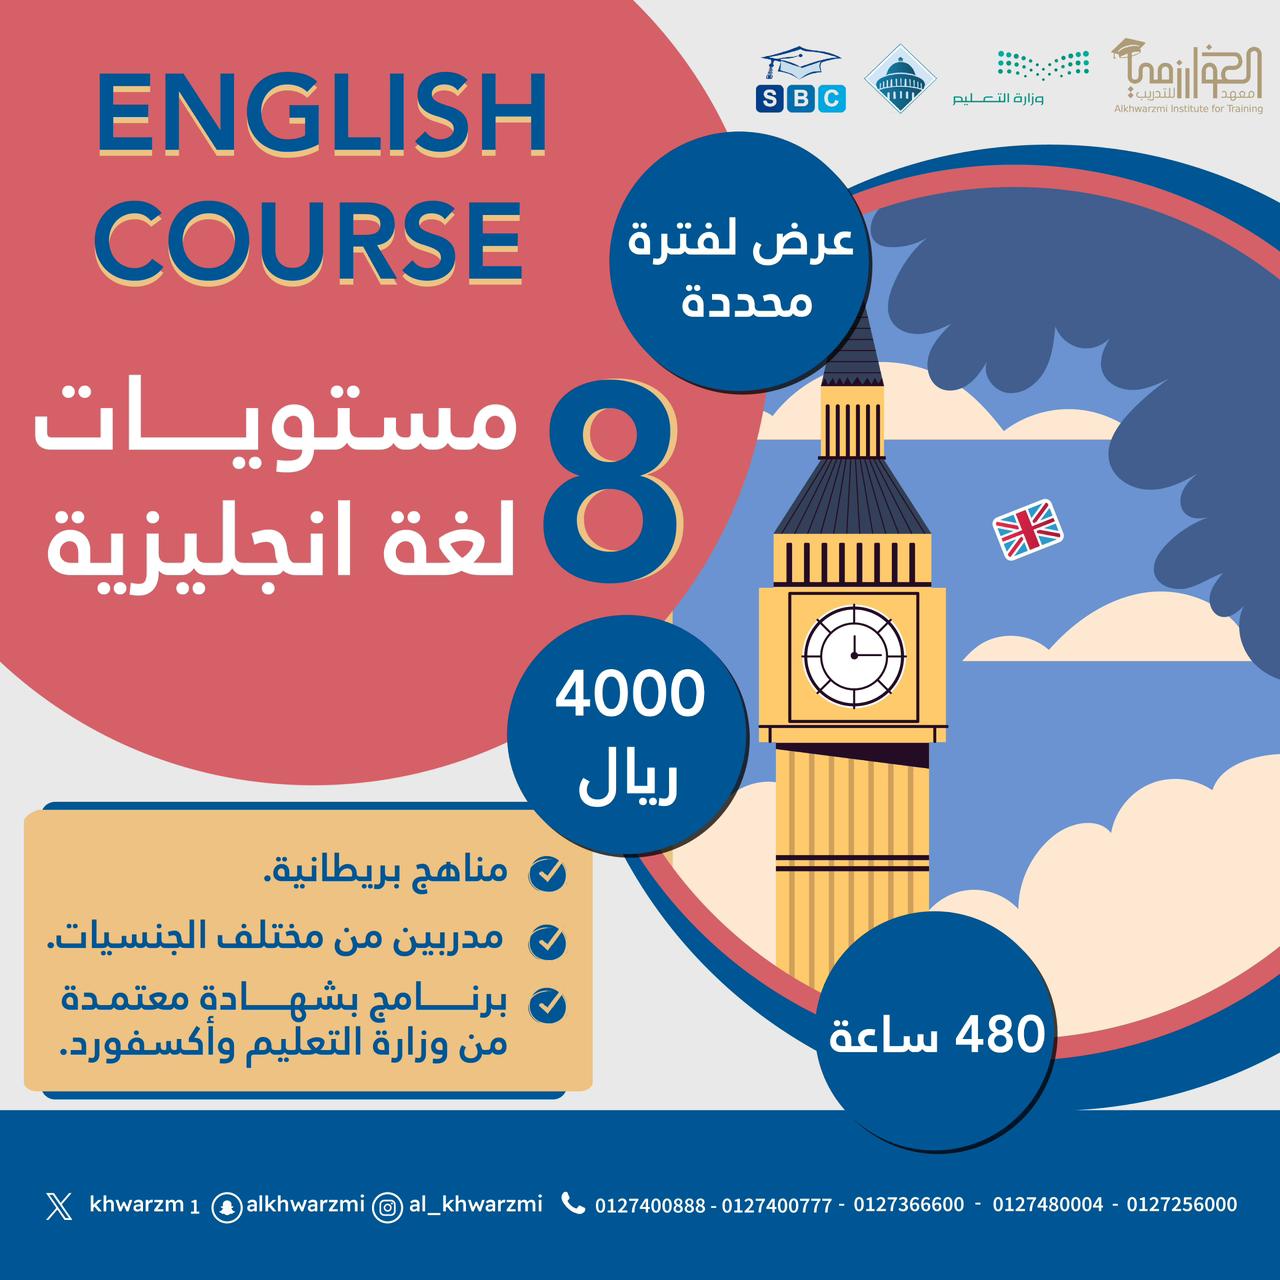 عرض لفترة محددة : 8 مستويات في اللغة الإنجليزية بمعدل 480 ساعة تدريبية